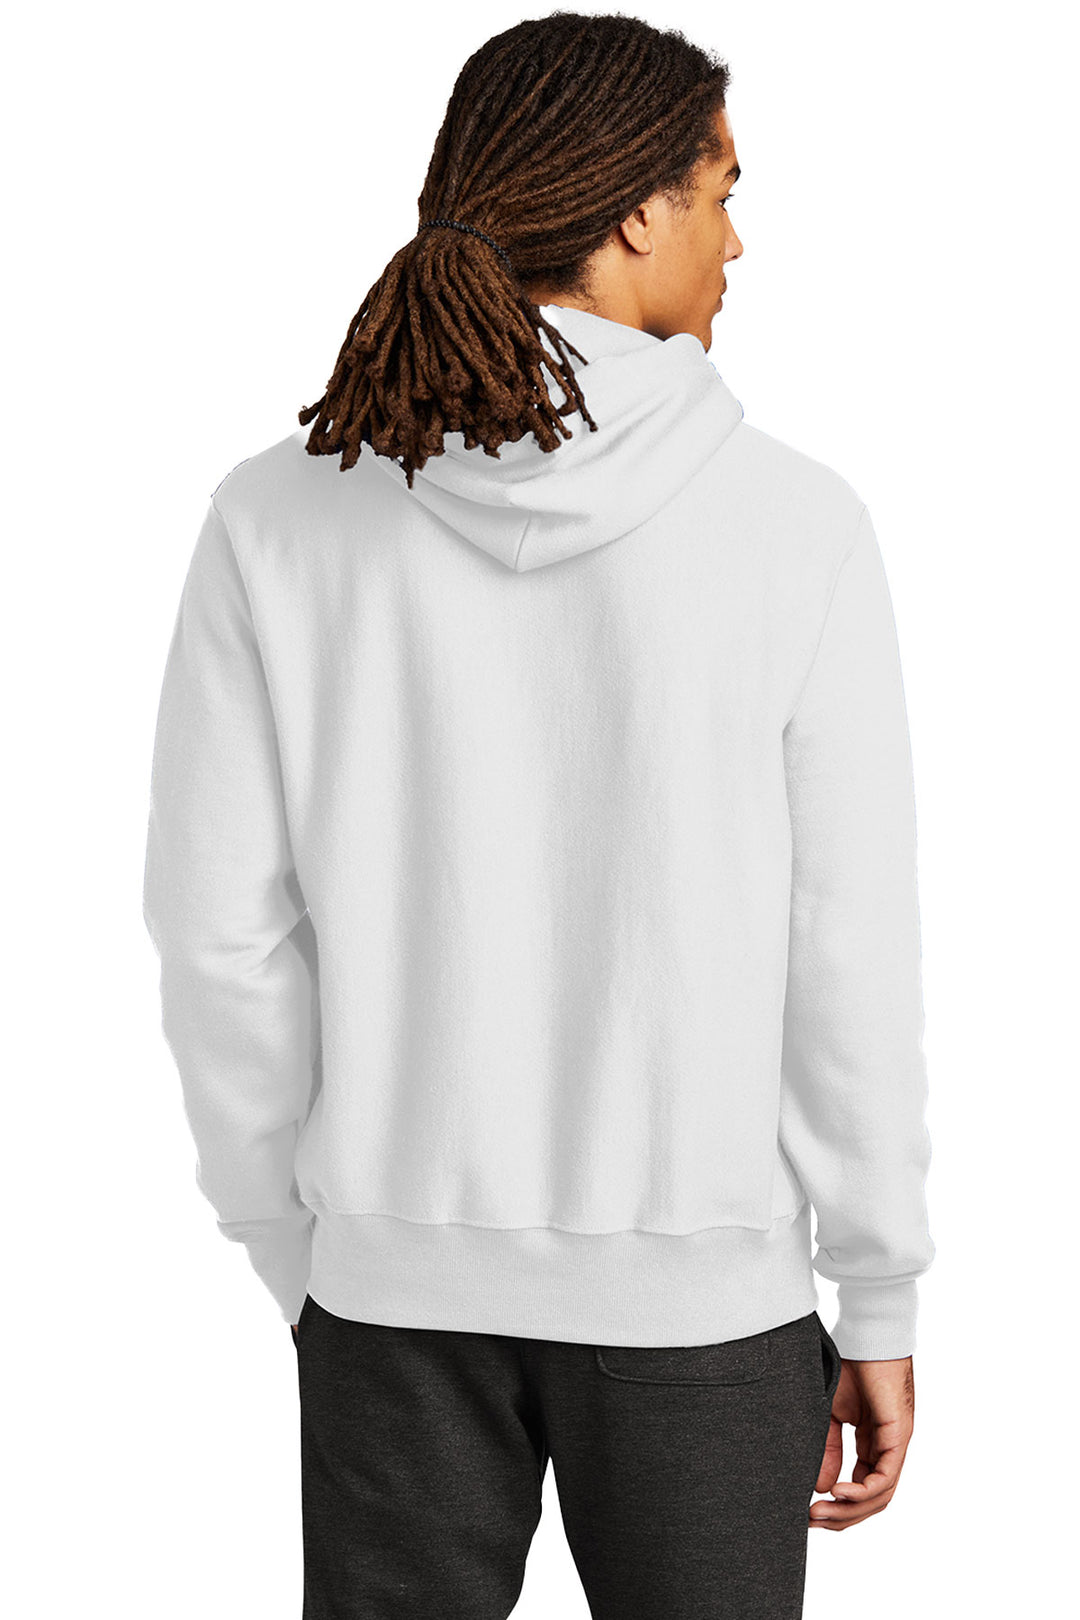 Reverse Weave Hooded Sweatshirt